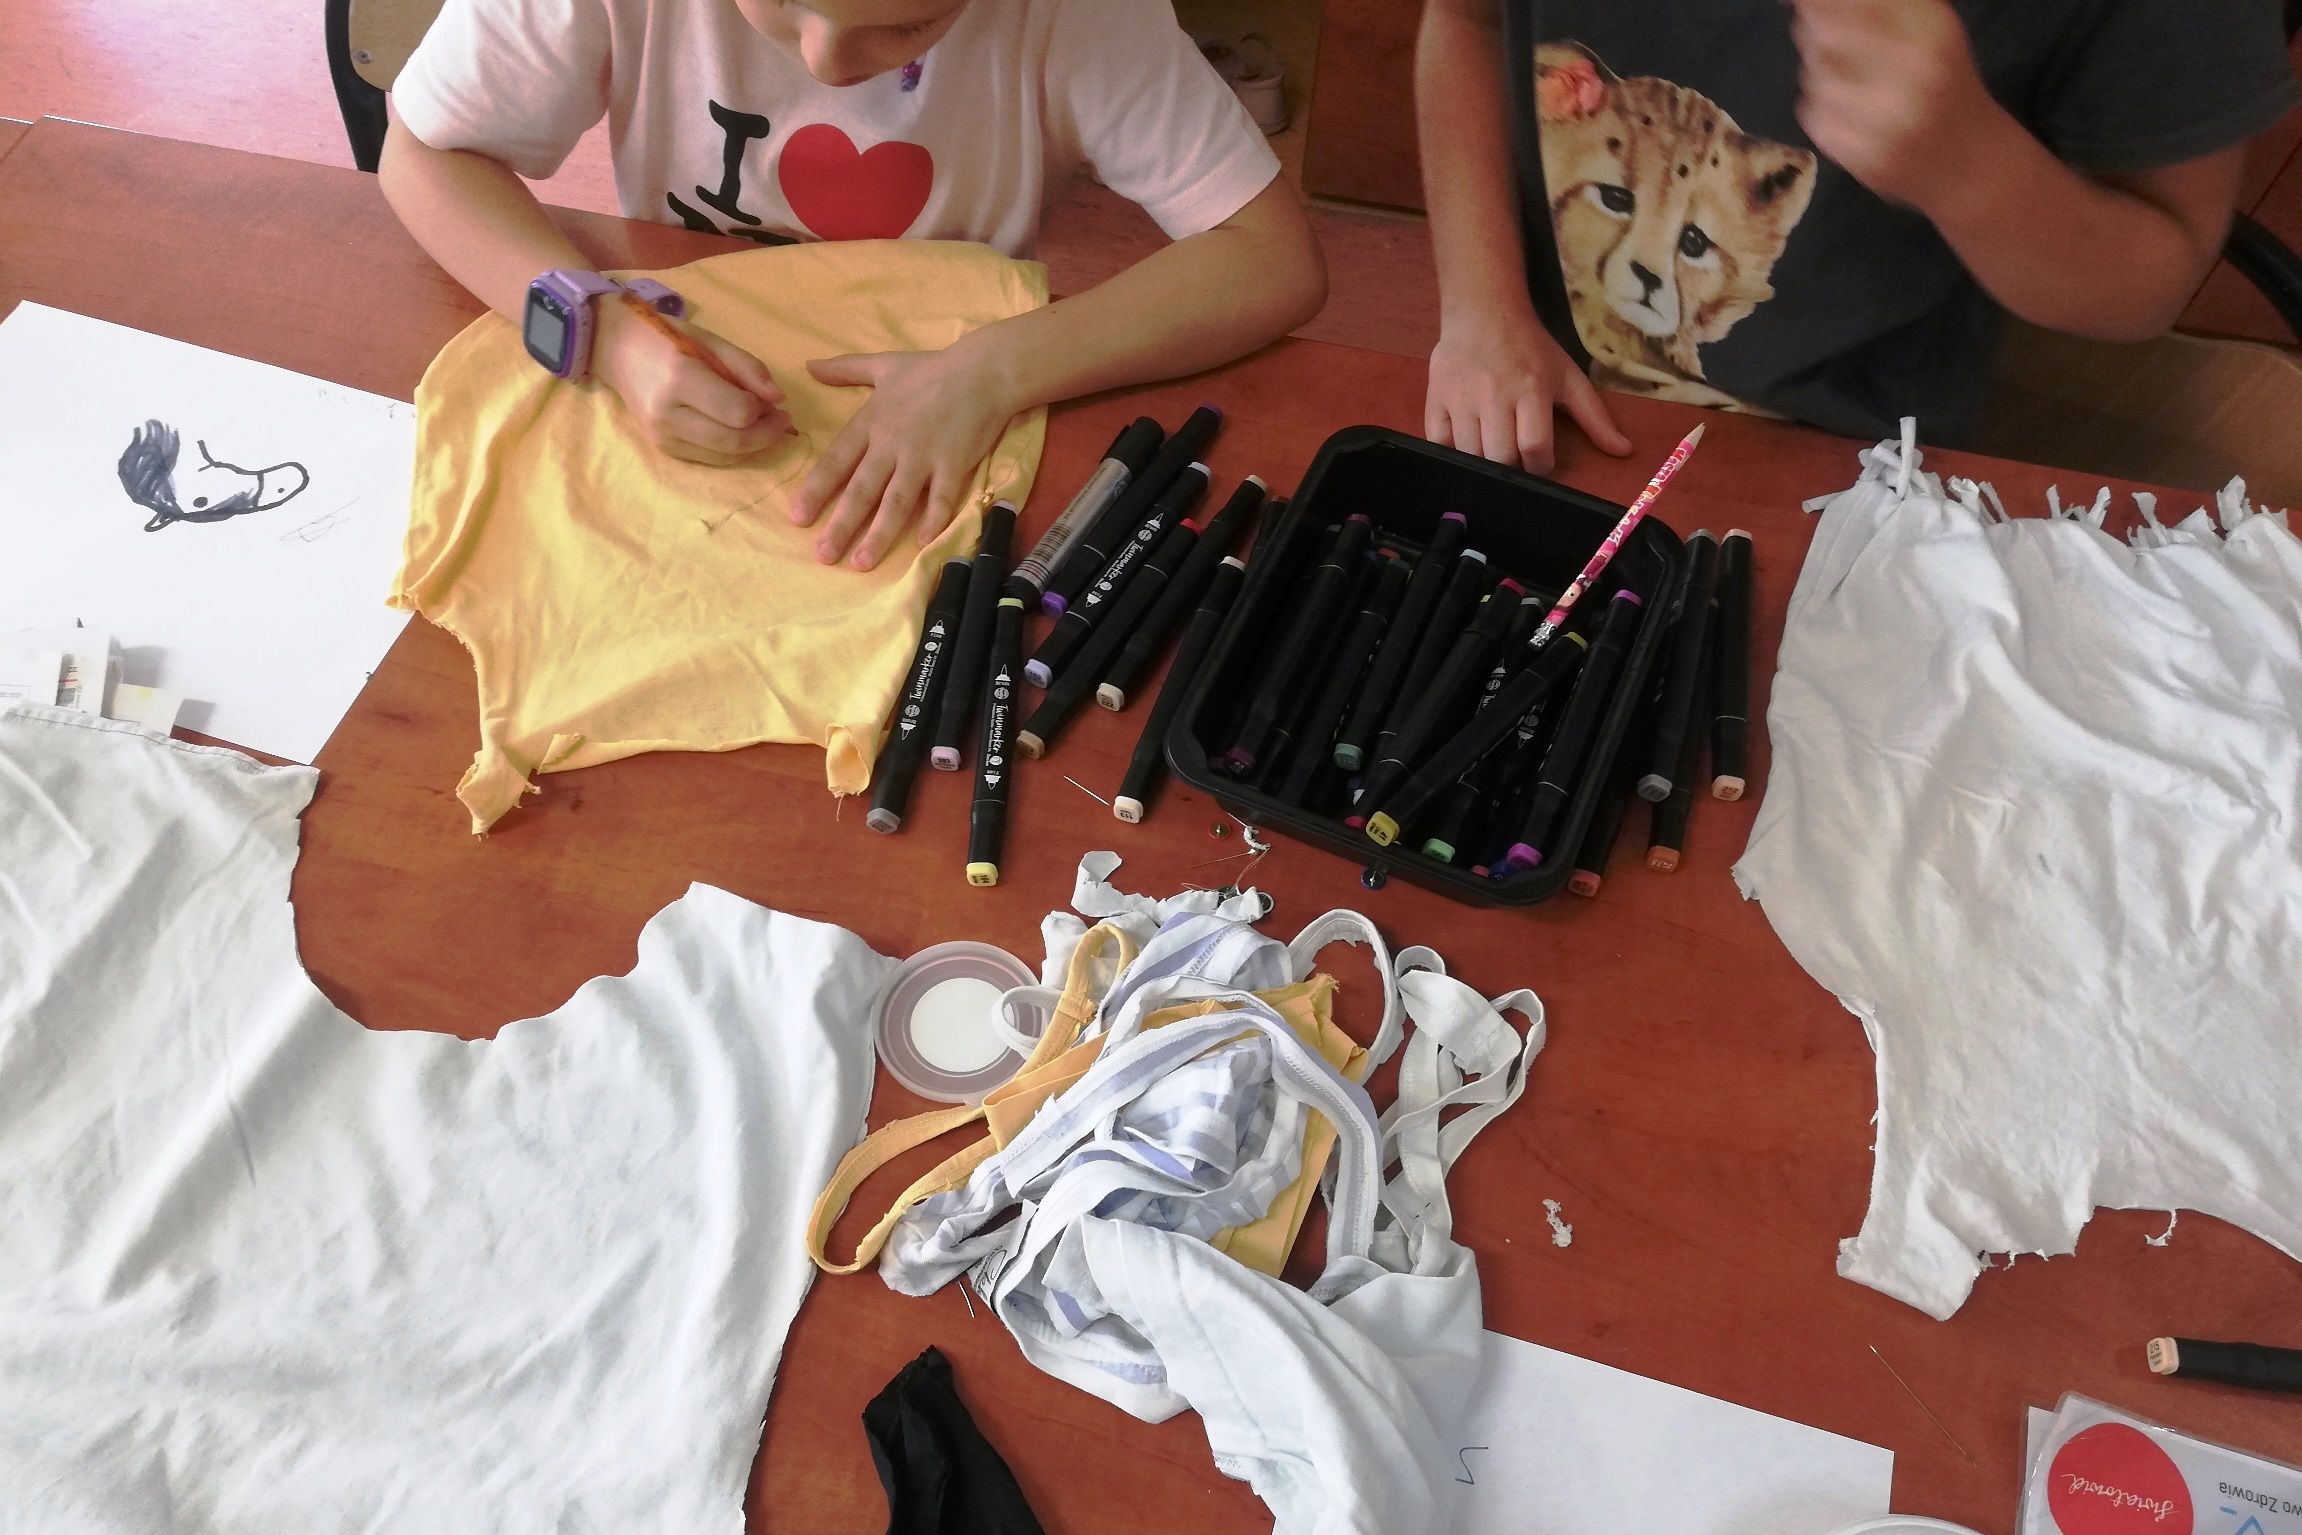 Stół warsztatowy, rozłożone koszulki trykotowe, z których uczestnicy wycinają różne kształty